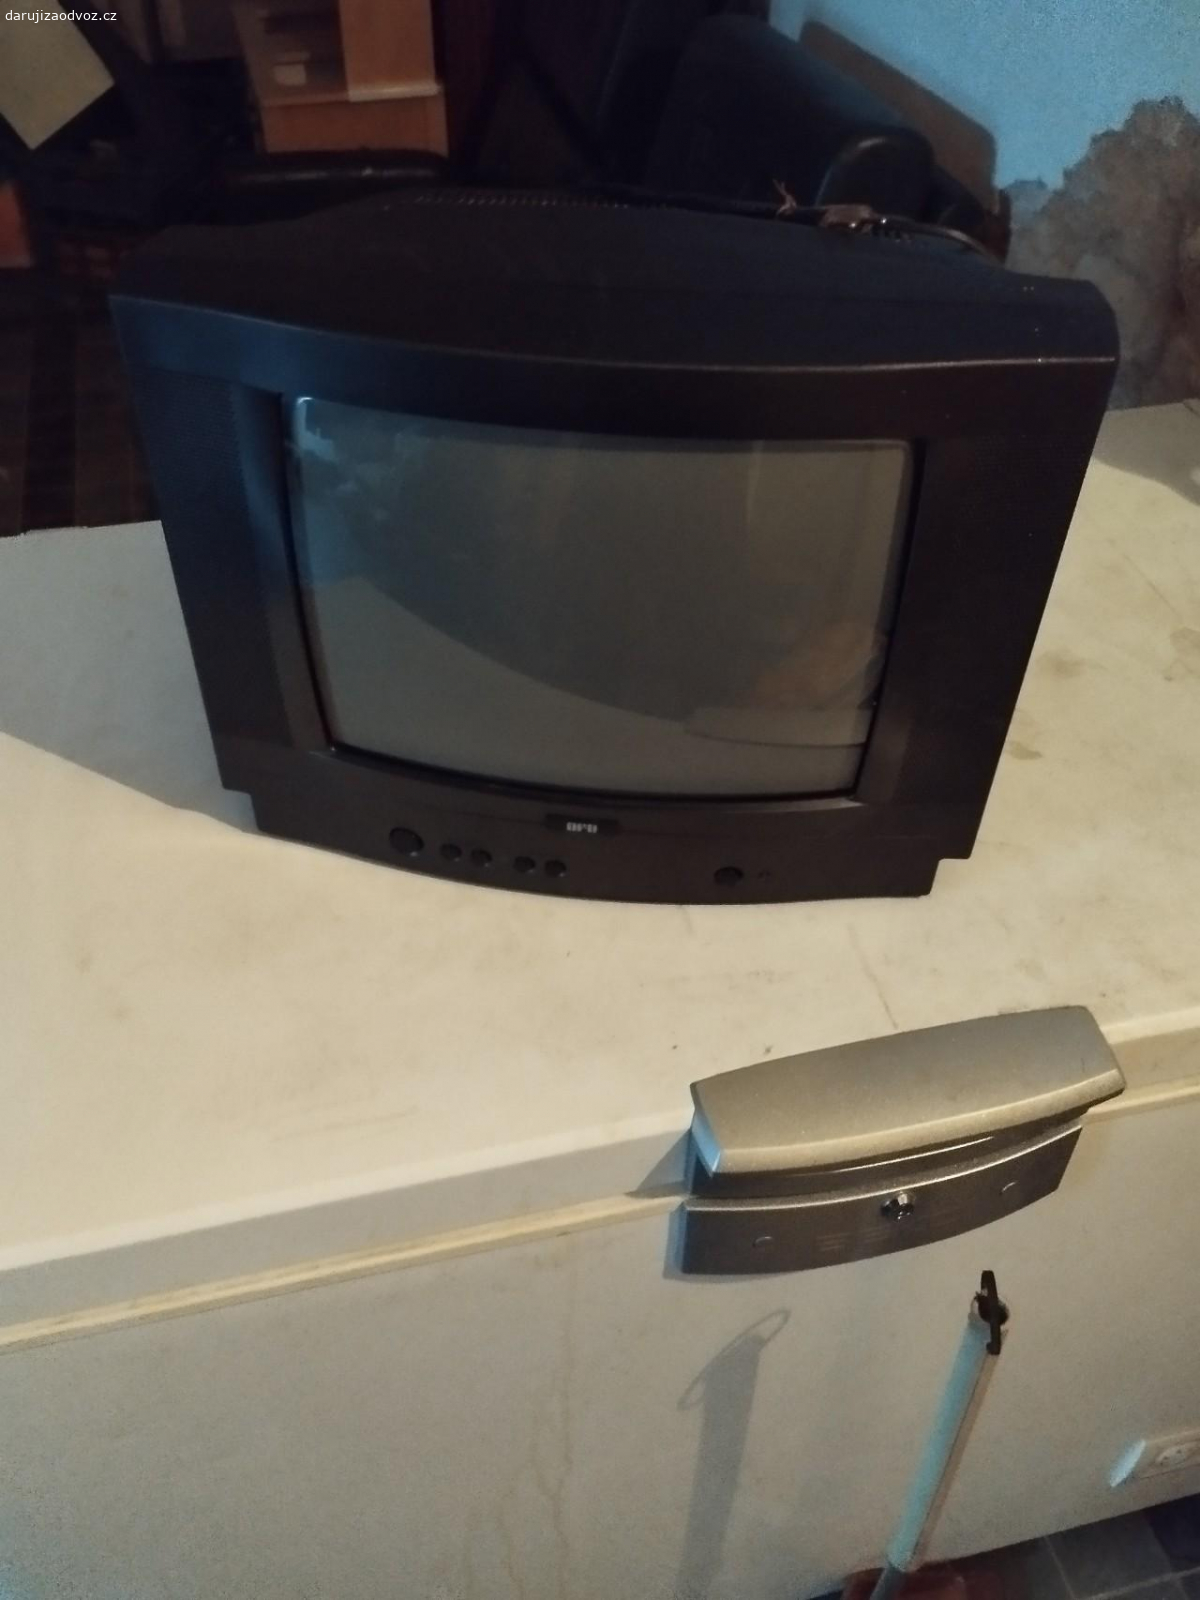 Malá televize. daruji malou funkční tv za odvoz